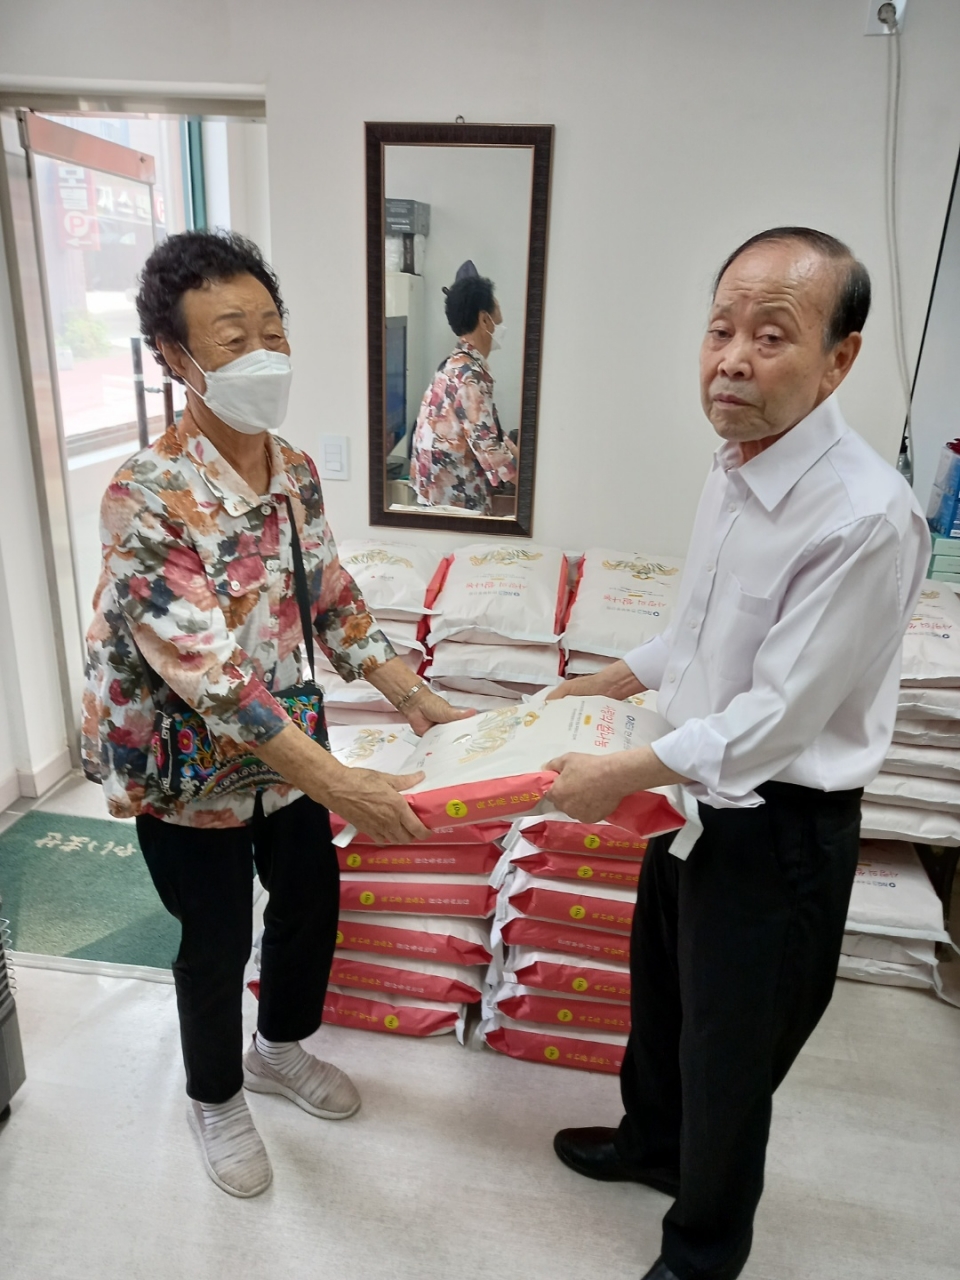 인천 서구지회가 '사랑의 쌀 나눔' 지원사업을 통해 지원 받은 쌀 100포(10kg)를 관내 저소득층 어르신들에게 나눔했다.